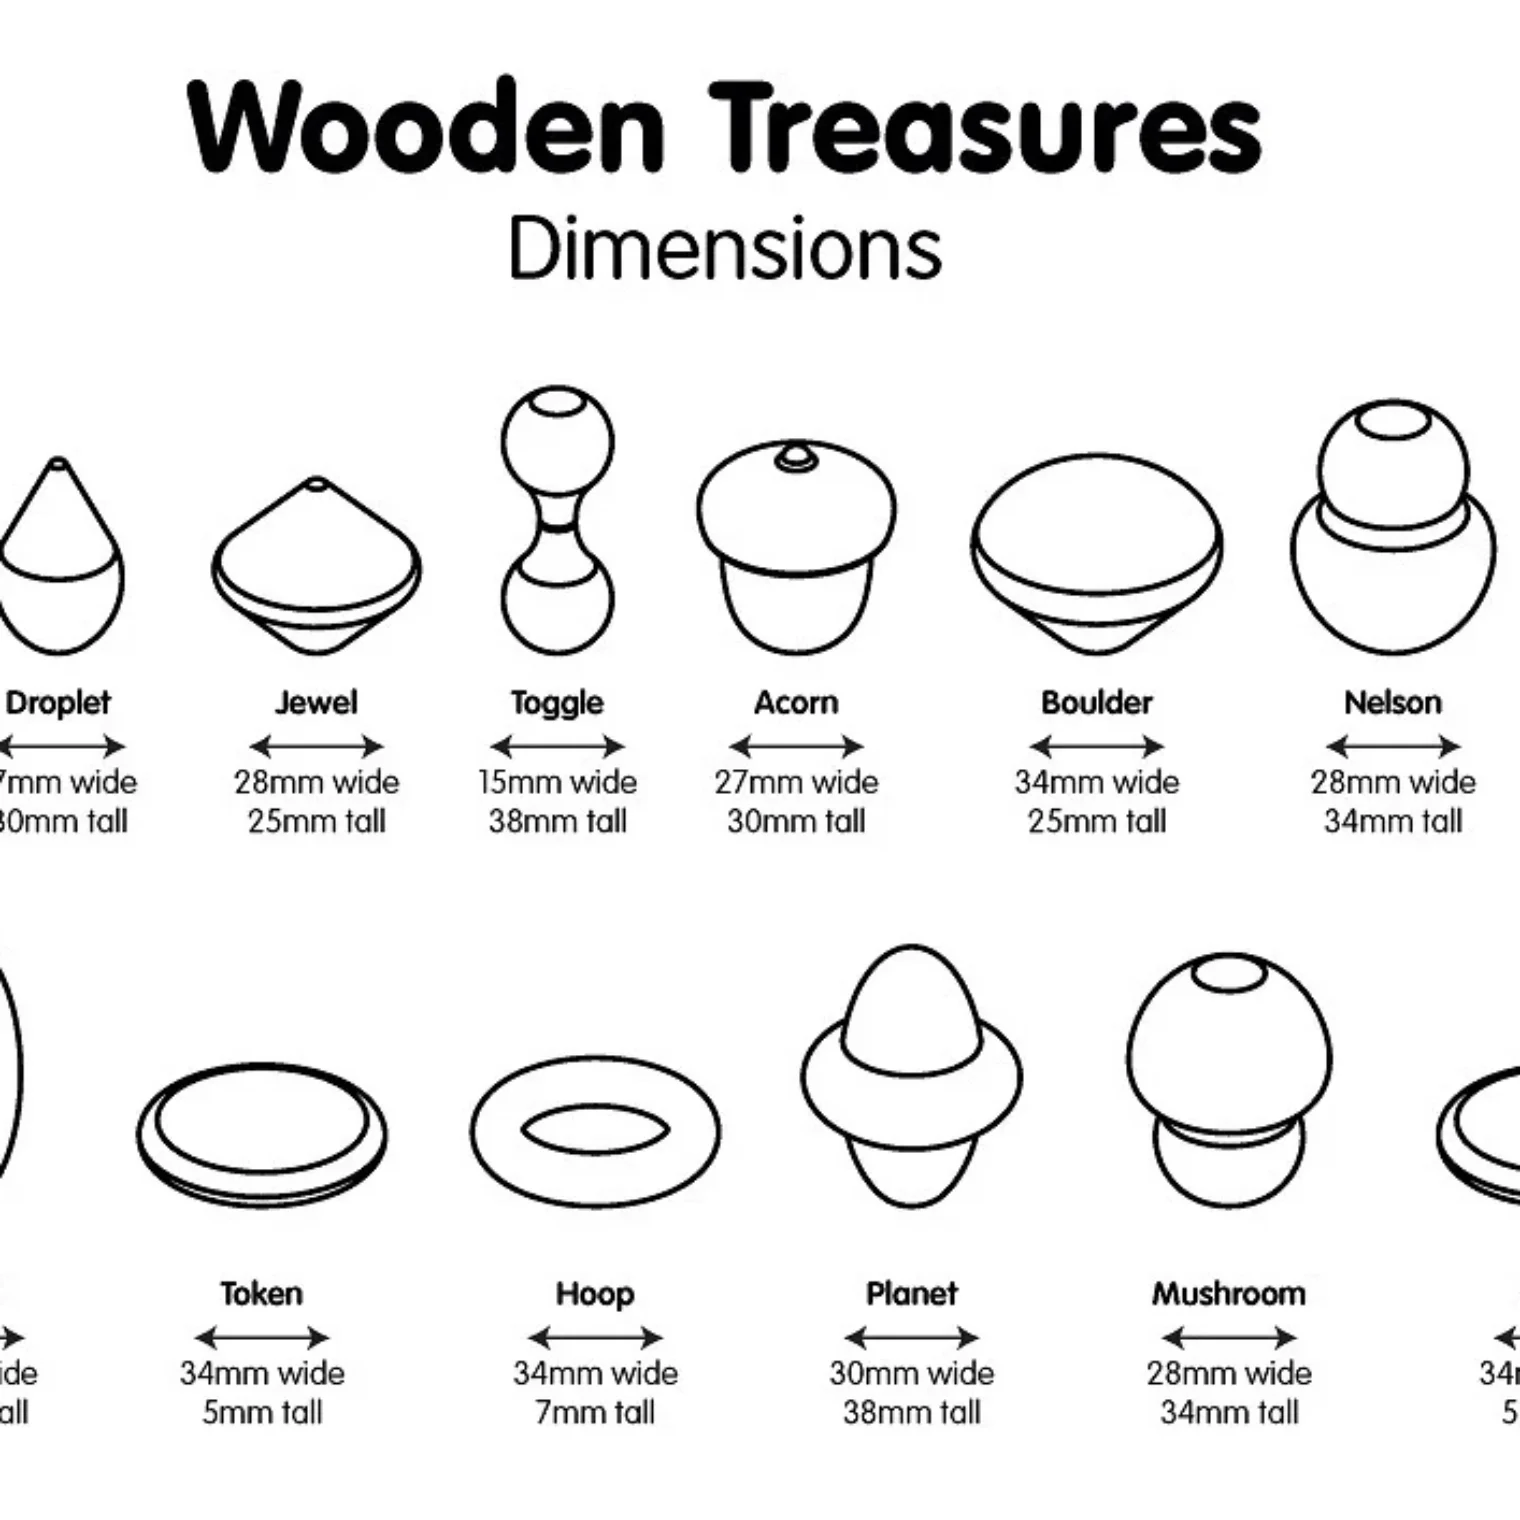 Wooden Treasures spec